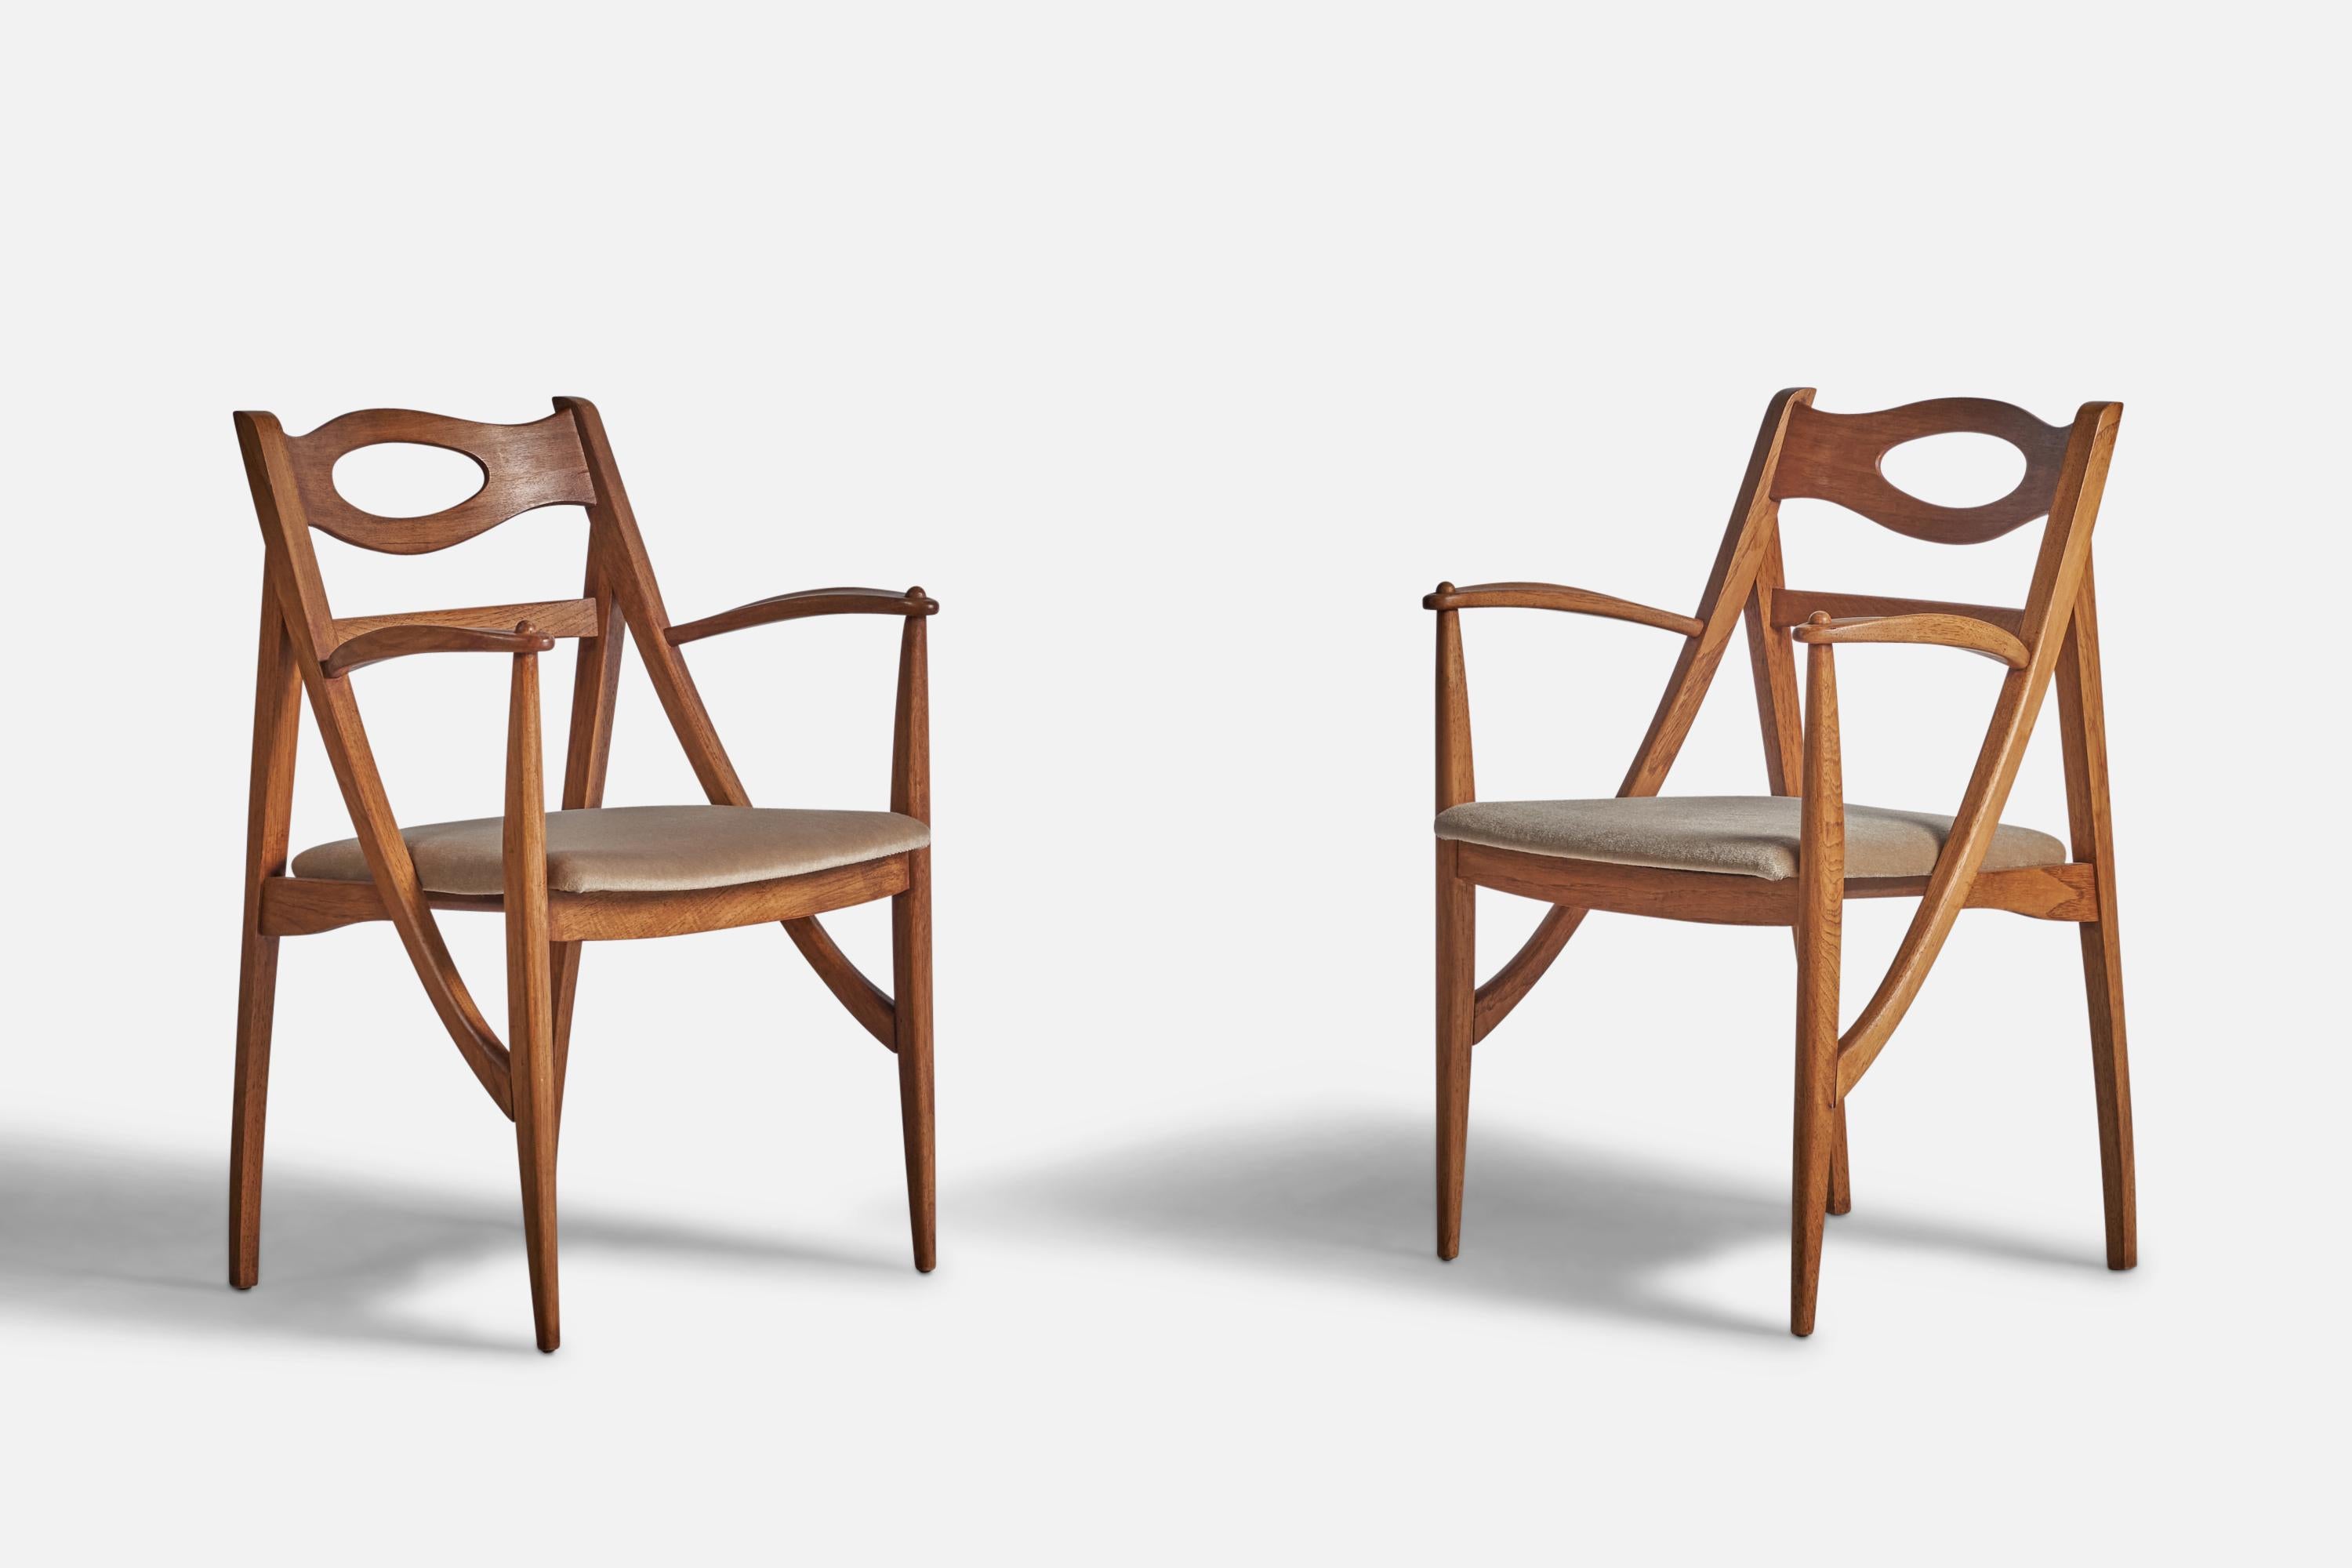 Ein Paar Beistellstühle aus Eiche und beigem Mohair, entworfen und hergestellt von Drexel, USA, 1950er Jahre.

17